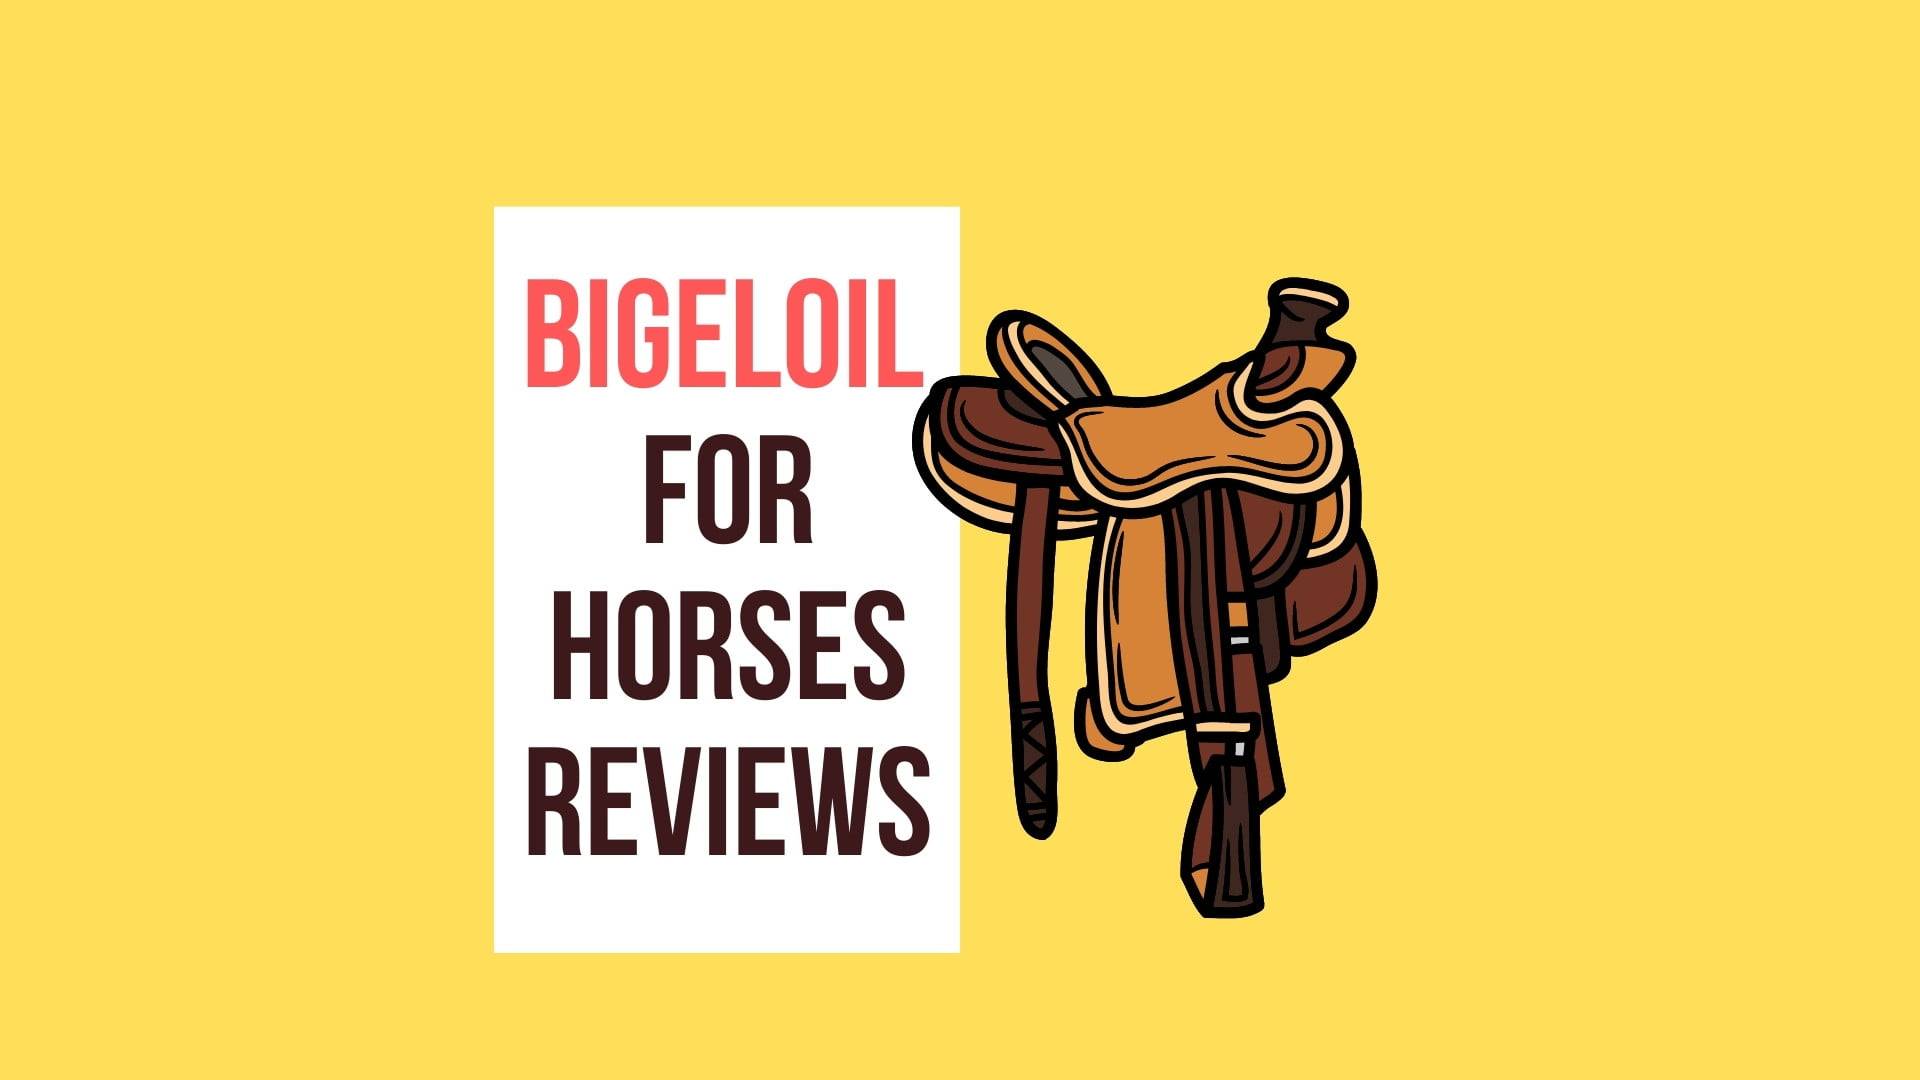 Bigeloil for horses